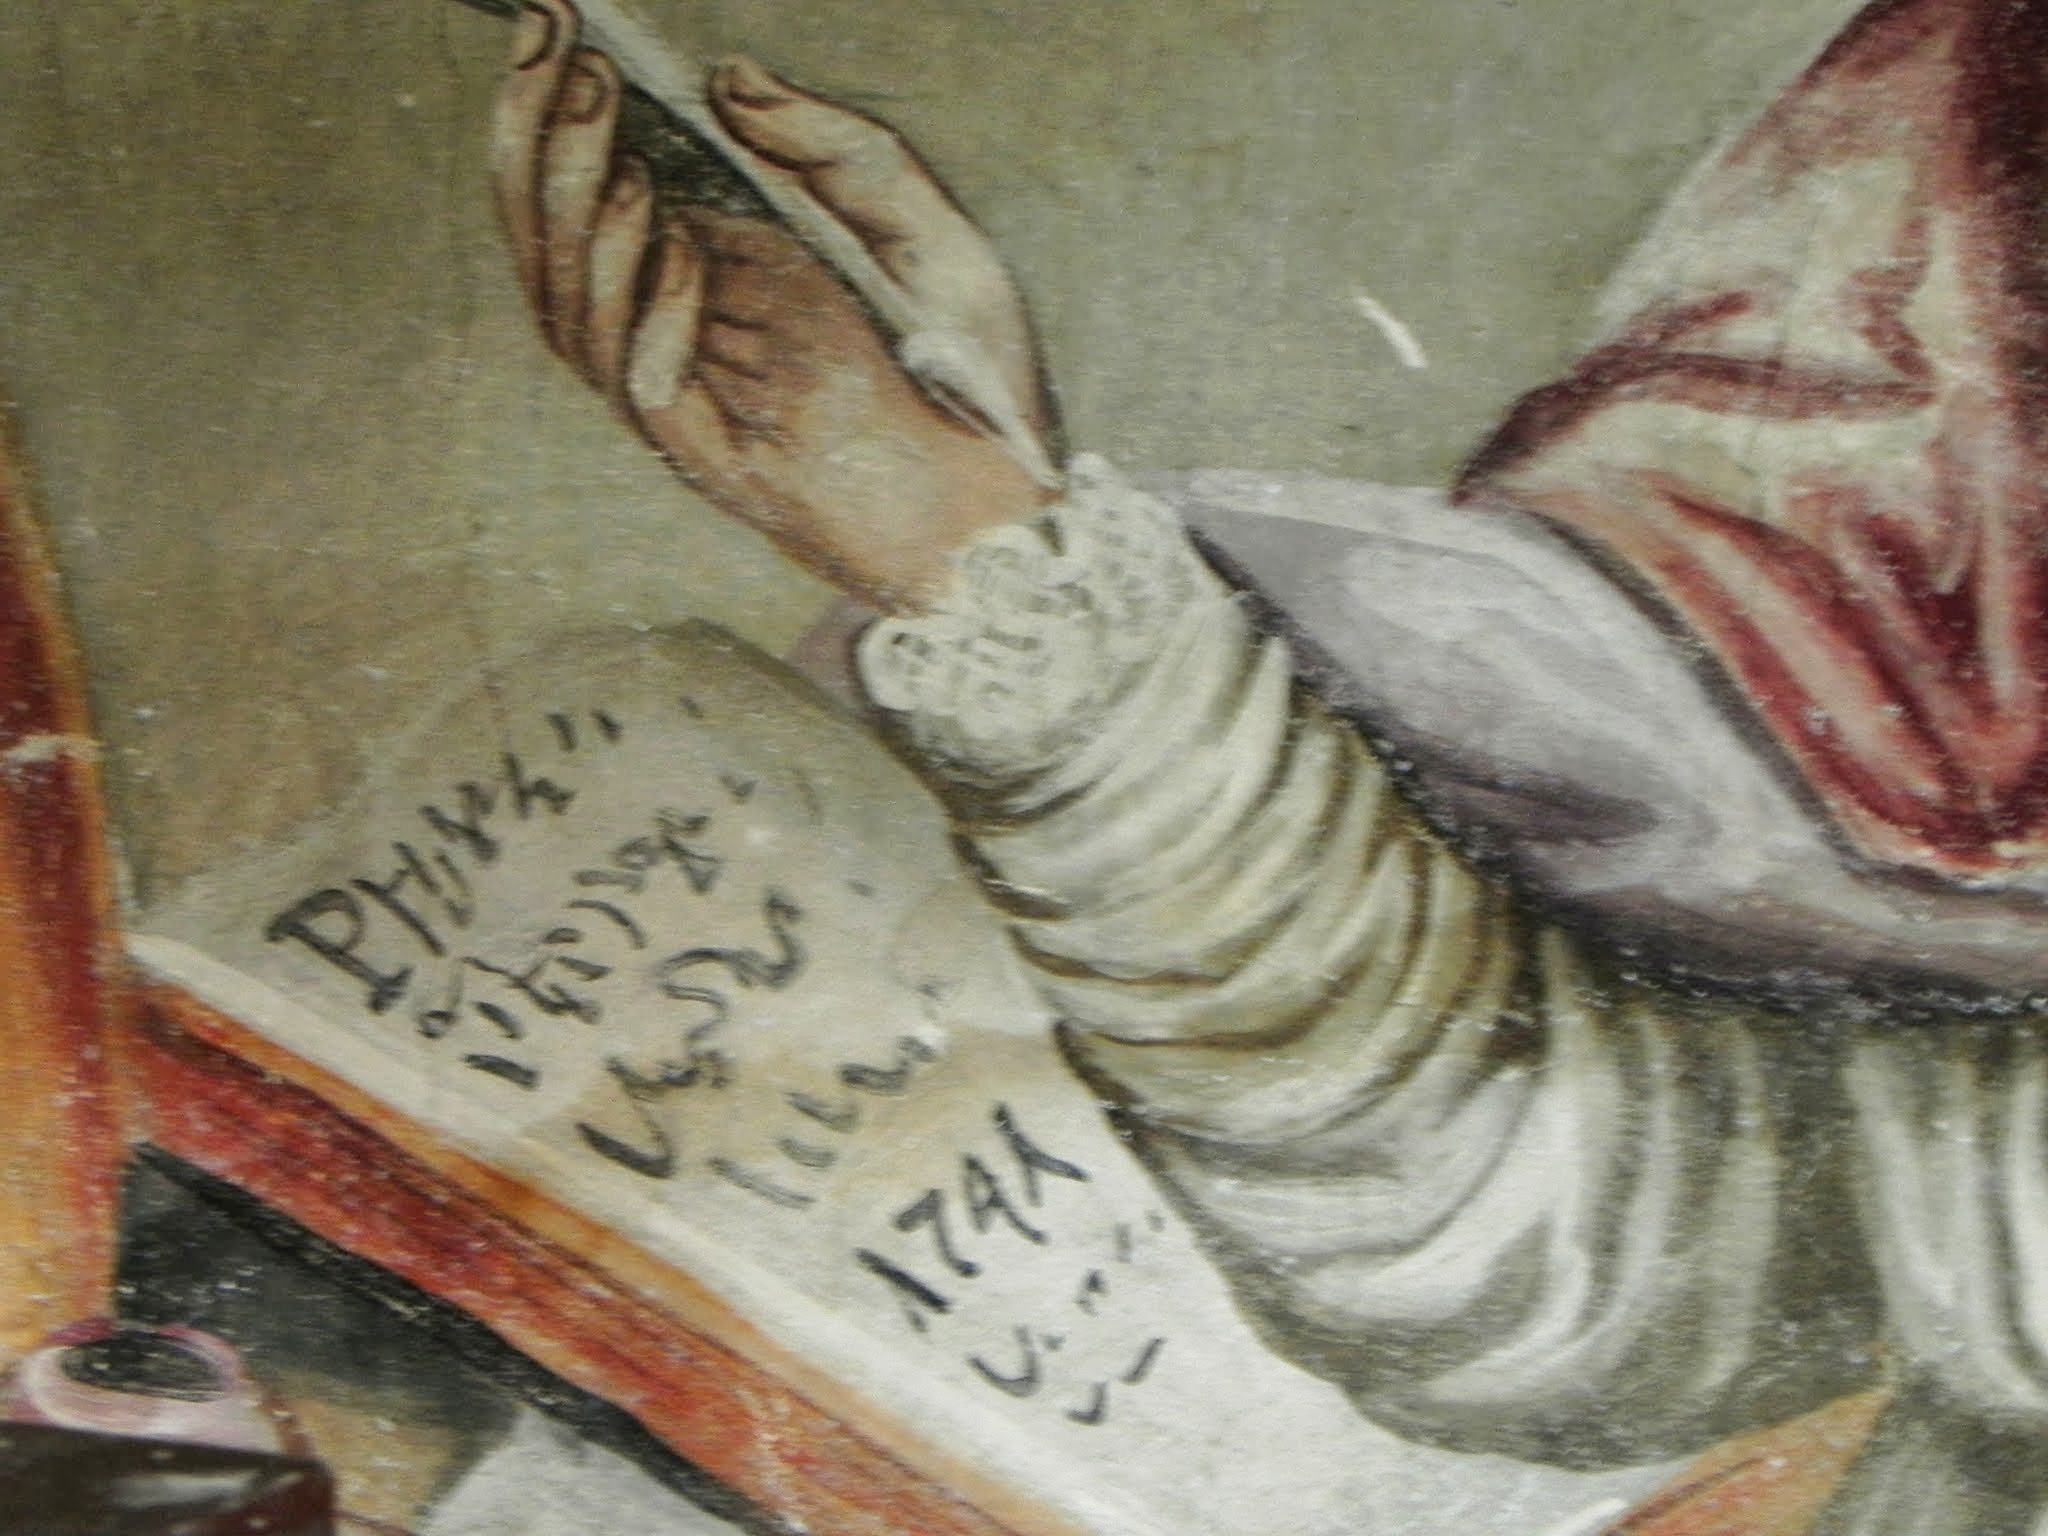 św. Augustyn - fresk w trakcie prac renowacyjnych (po oczyszczeniu). W księdze data konsekracji kościoła